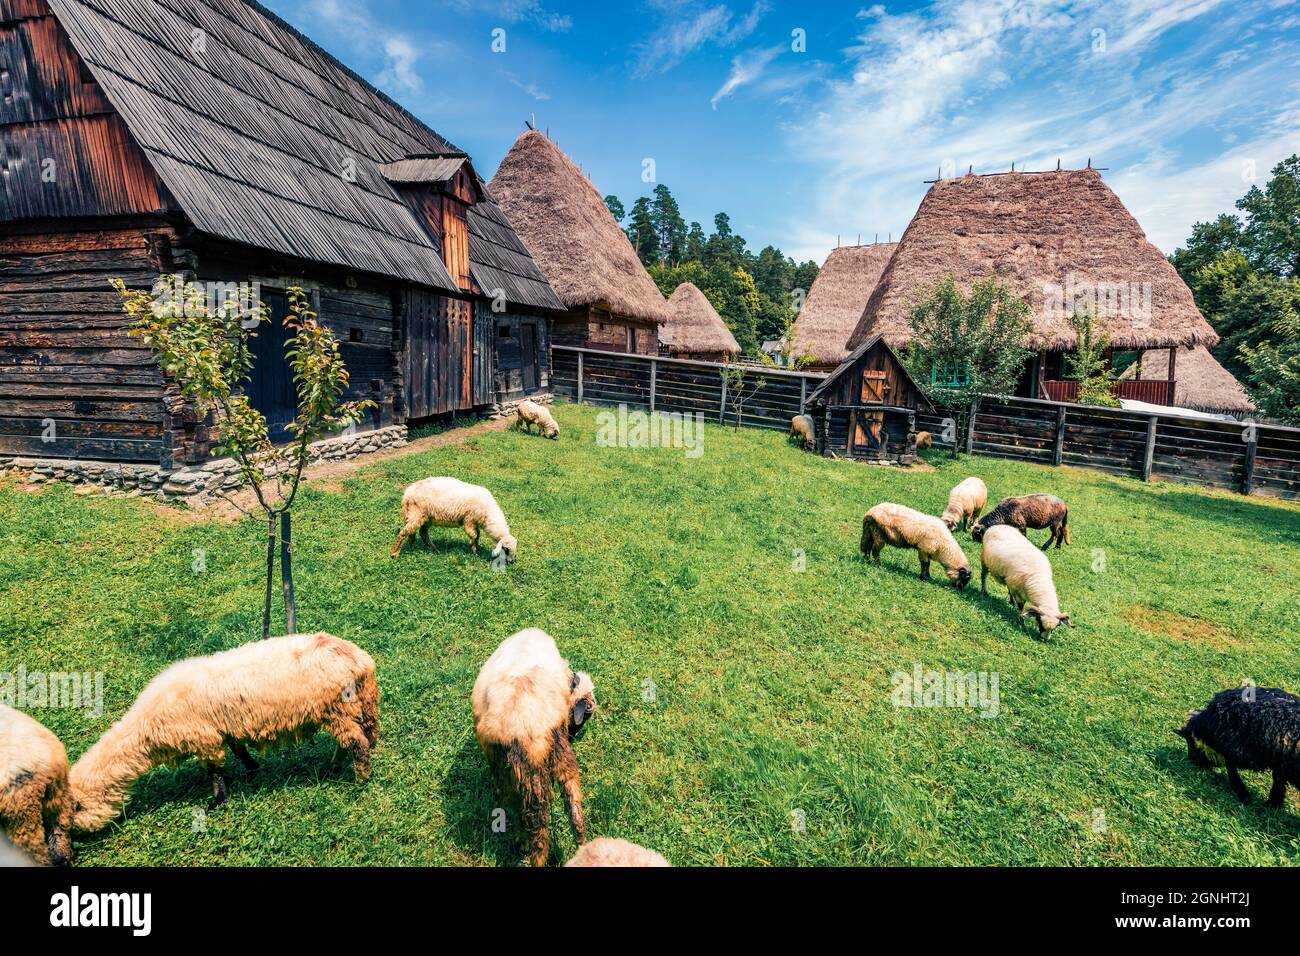 Troupeau de moutons dans le village des hautes terres. Paysage rural pittoresque en Transylvanie, Roumanie, Europe. Magnifique scène matinale de campagne. Banque D'Images